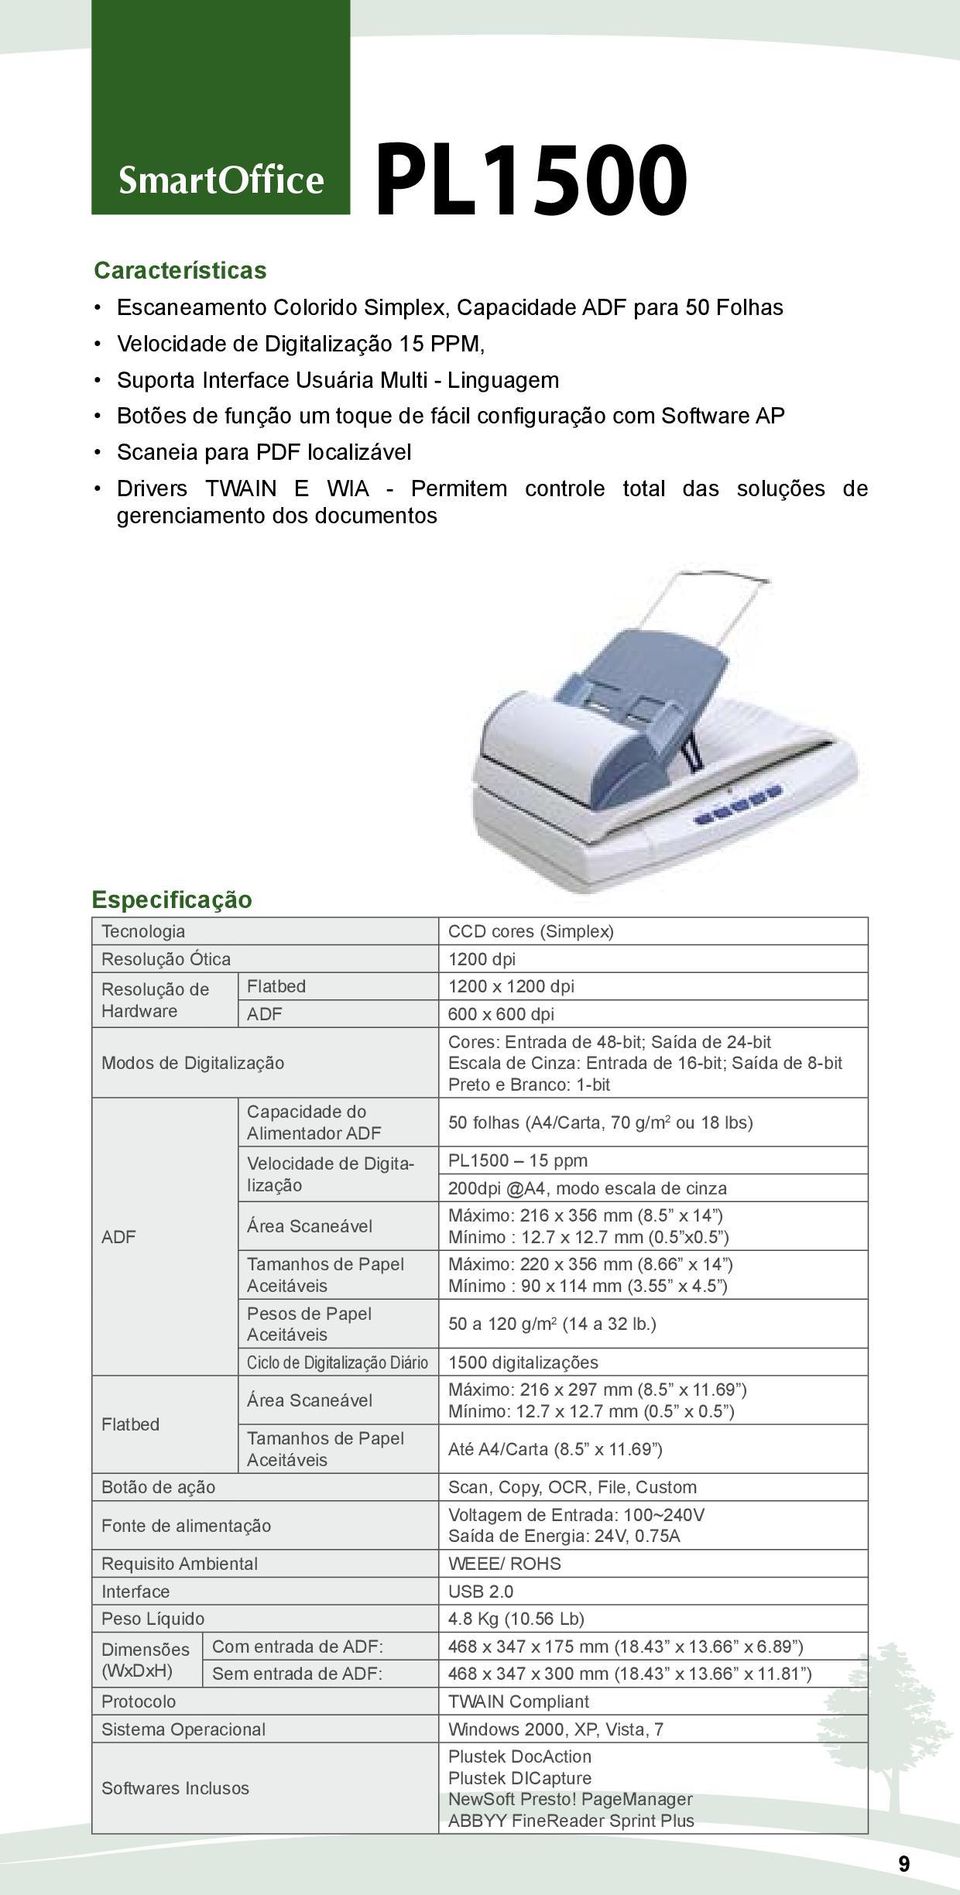 Modos de Digitalização ADF Capacidade do Alimentador ADF Velocidade de Digitalização Área Scaneável Tamanhos de Papel Aceitáveis Pesos de Papel Aceitáveis CCD cores (Simplex) 1200 dpi 1200 x 1200 dpi